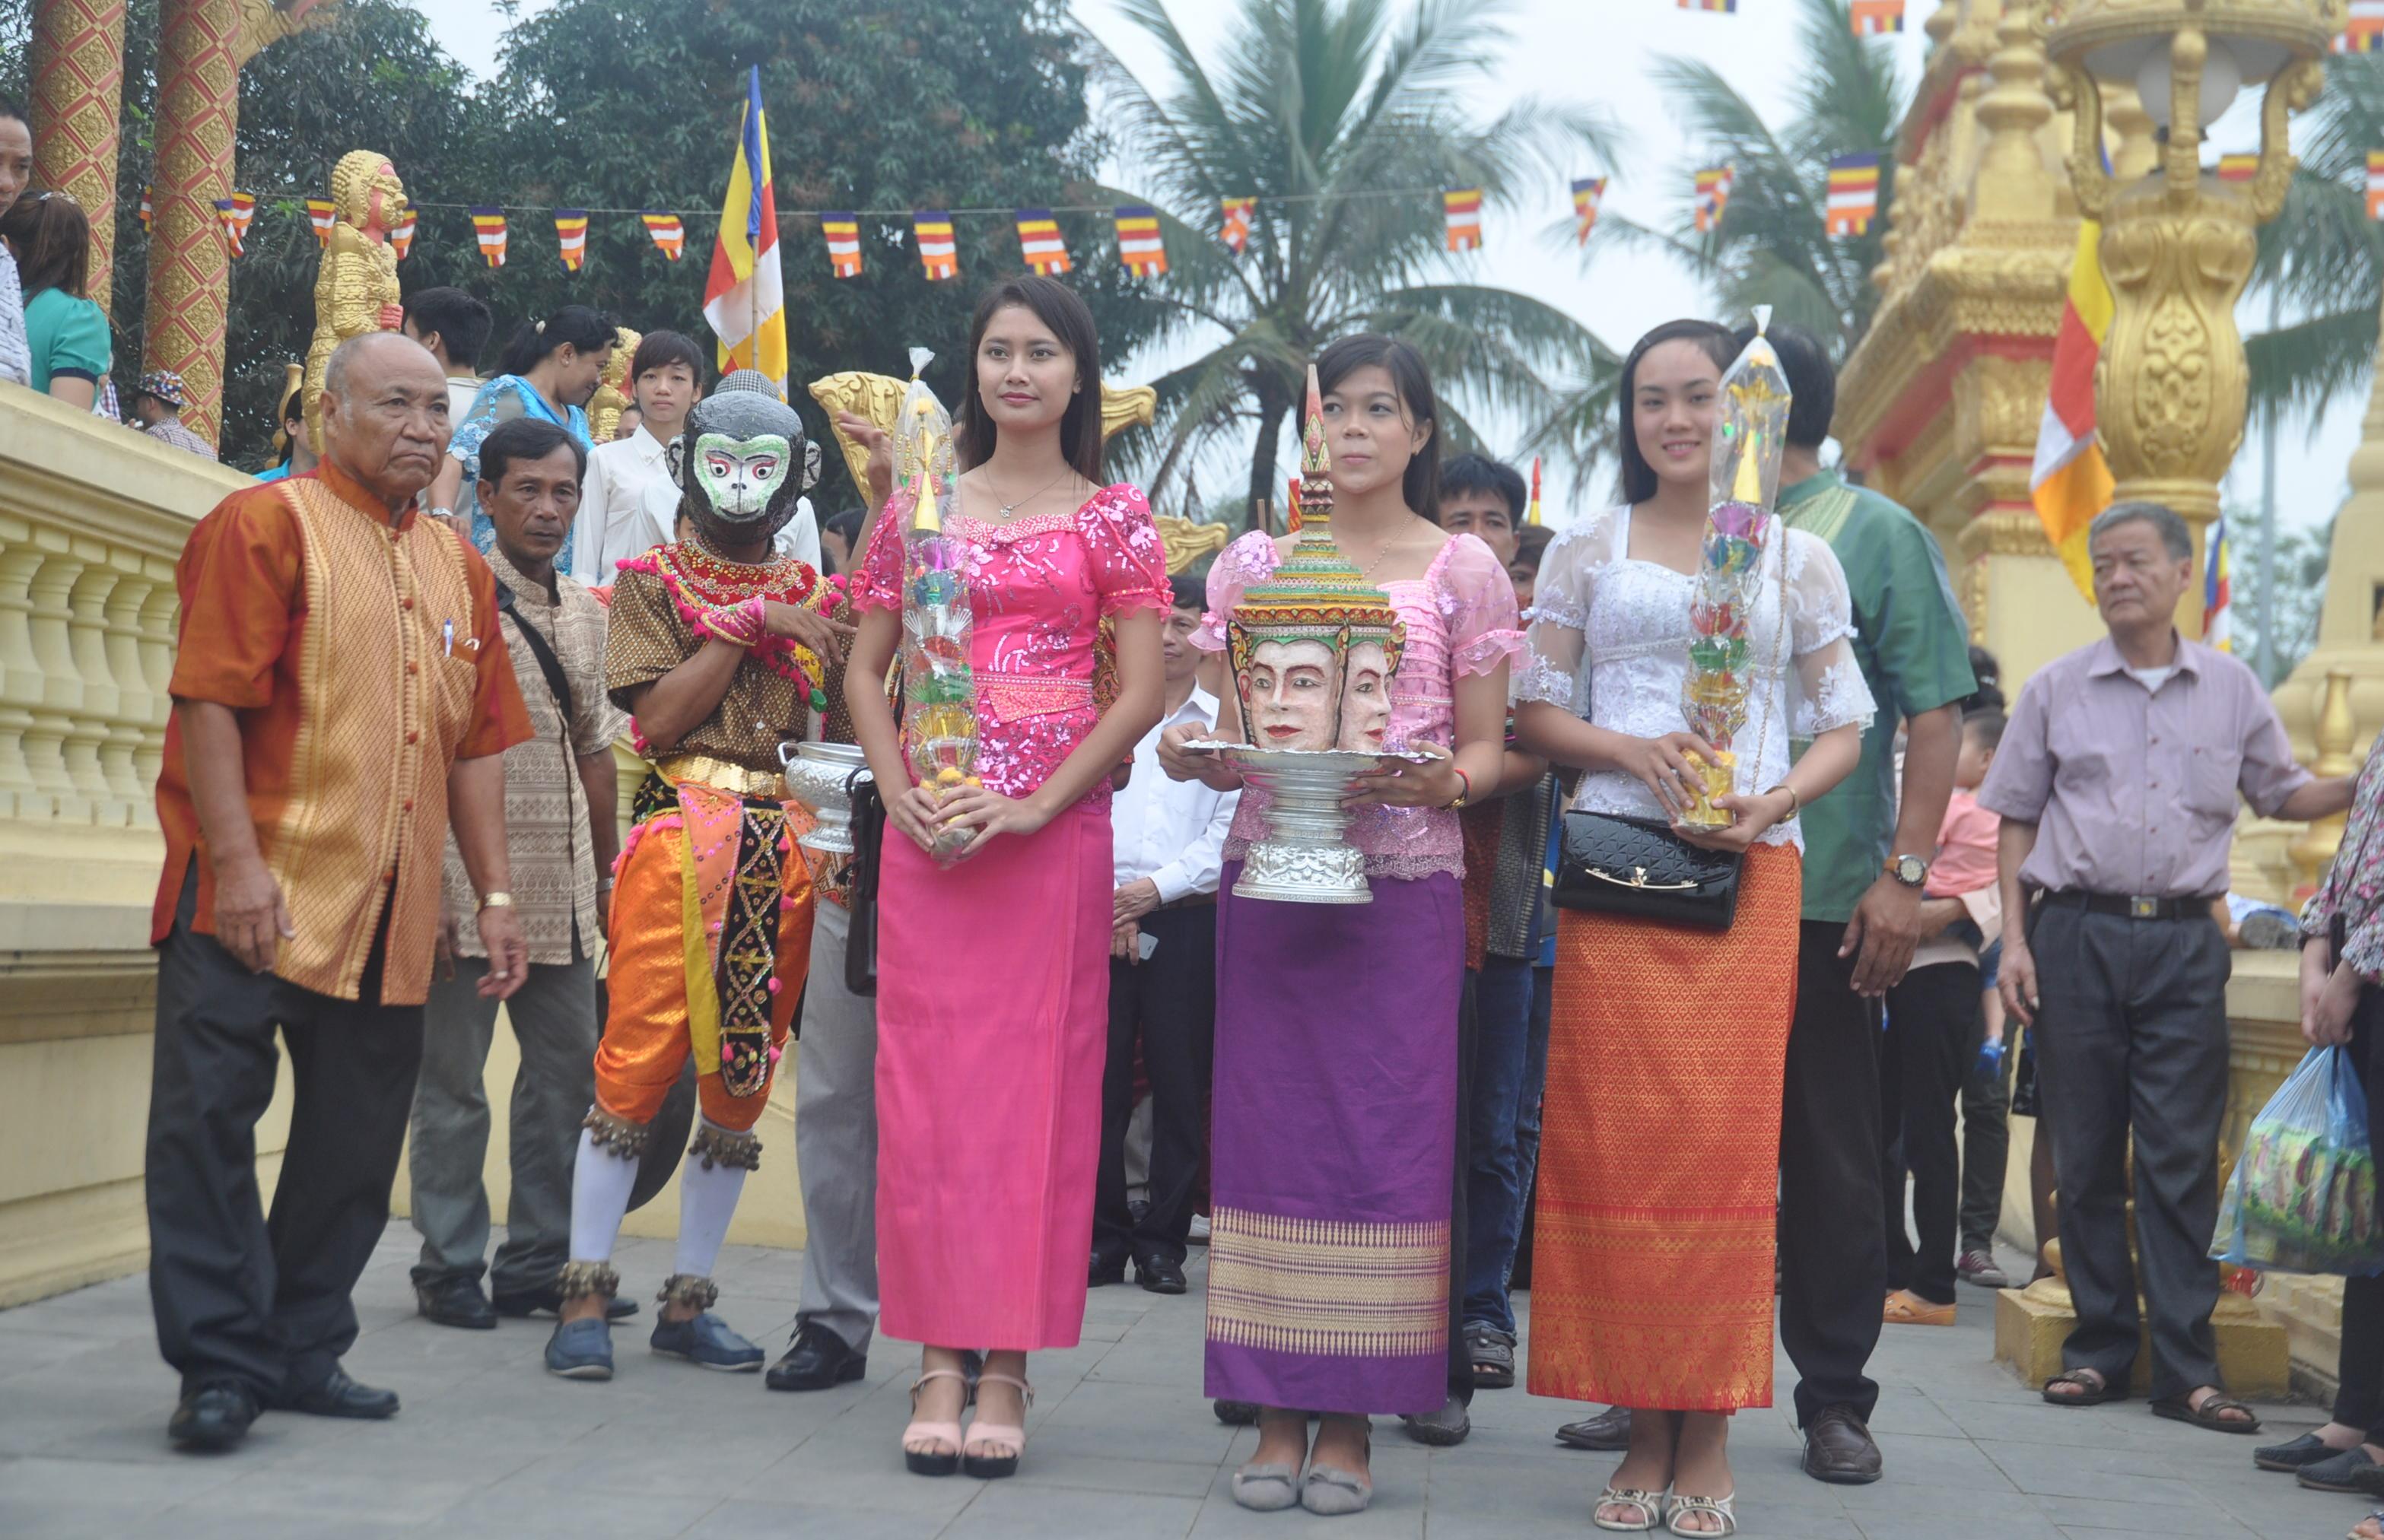 Vào giờ tốt đã chọn, mọi người mang theo lễ vật: nhang đèn, hoa quả đến chùa làm lễ rước đại lịch Moha Sangkran